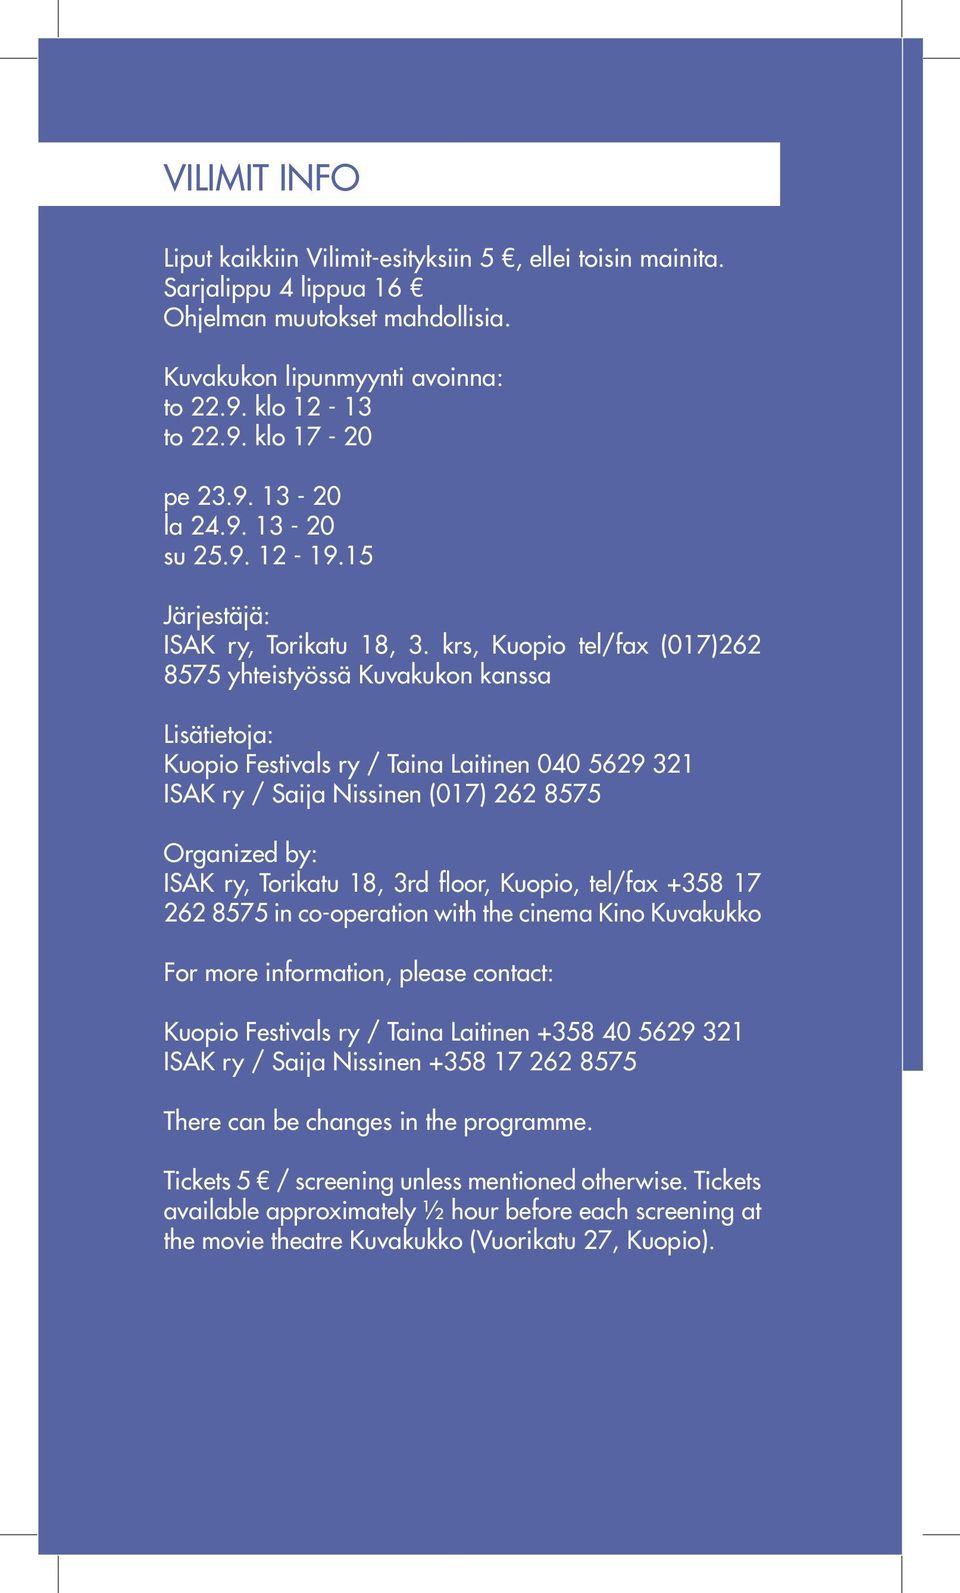 krs, Kuopio tel/fax (017)262 8575 yhteistyössä Kuvakukon kanssa Lisätietoja: Kuopio Festivals ry / Taina Laitinen 040 5629 321 ISAK ry / Saija Nissinen (017) 262 8575 Organized by: ISAK ry, Torikatu